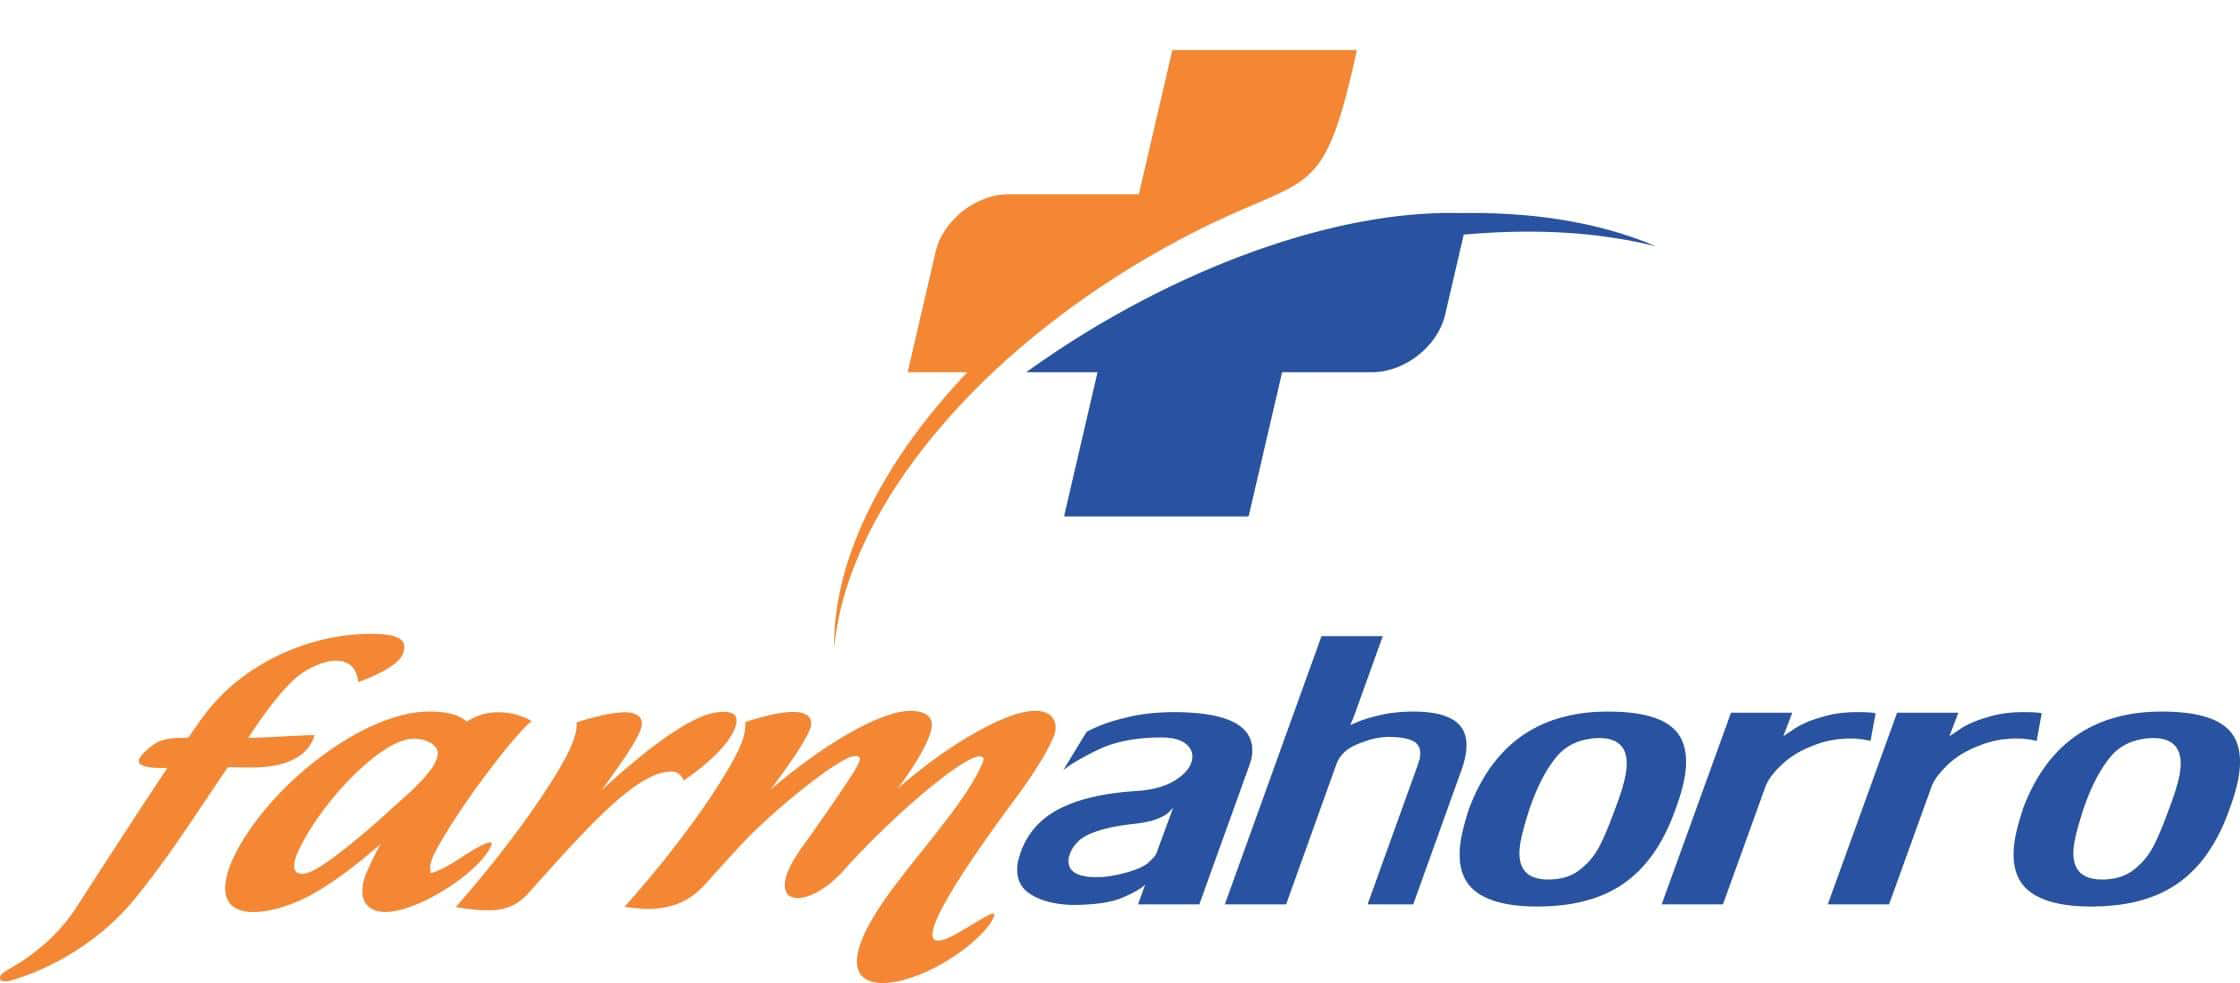 FarmAhorro logo